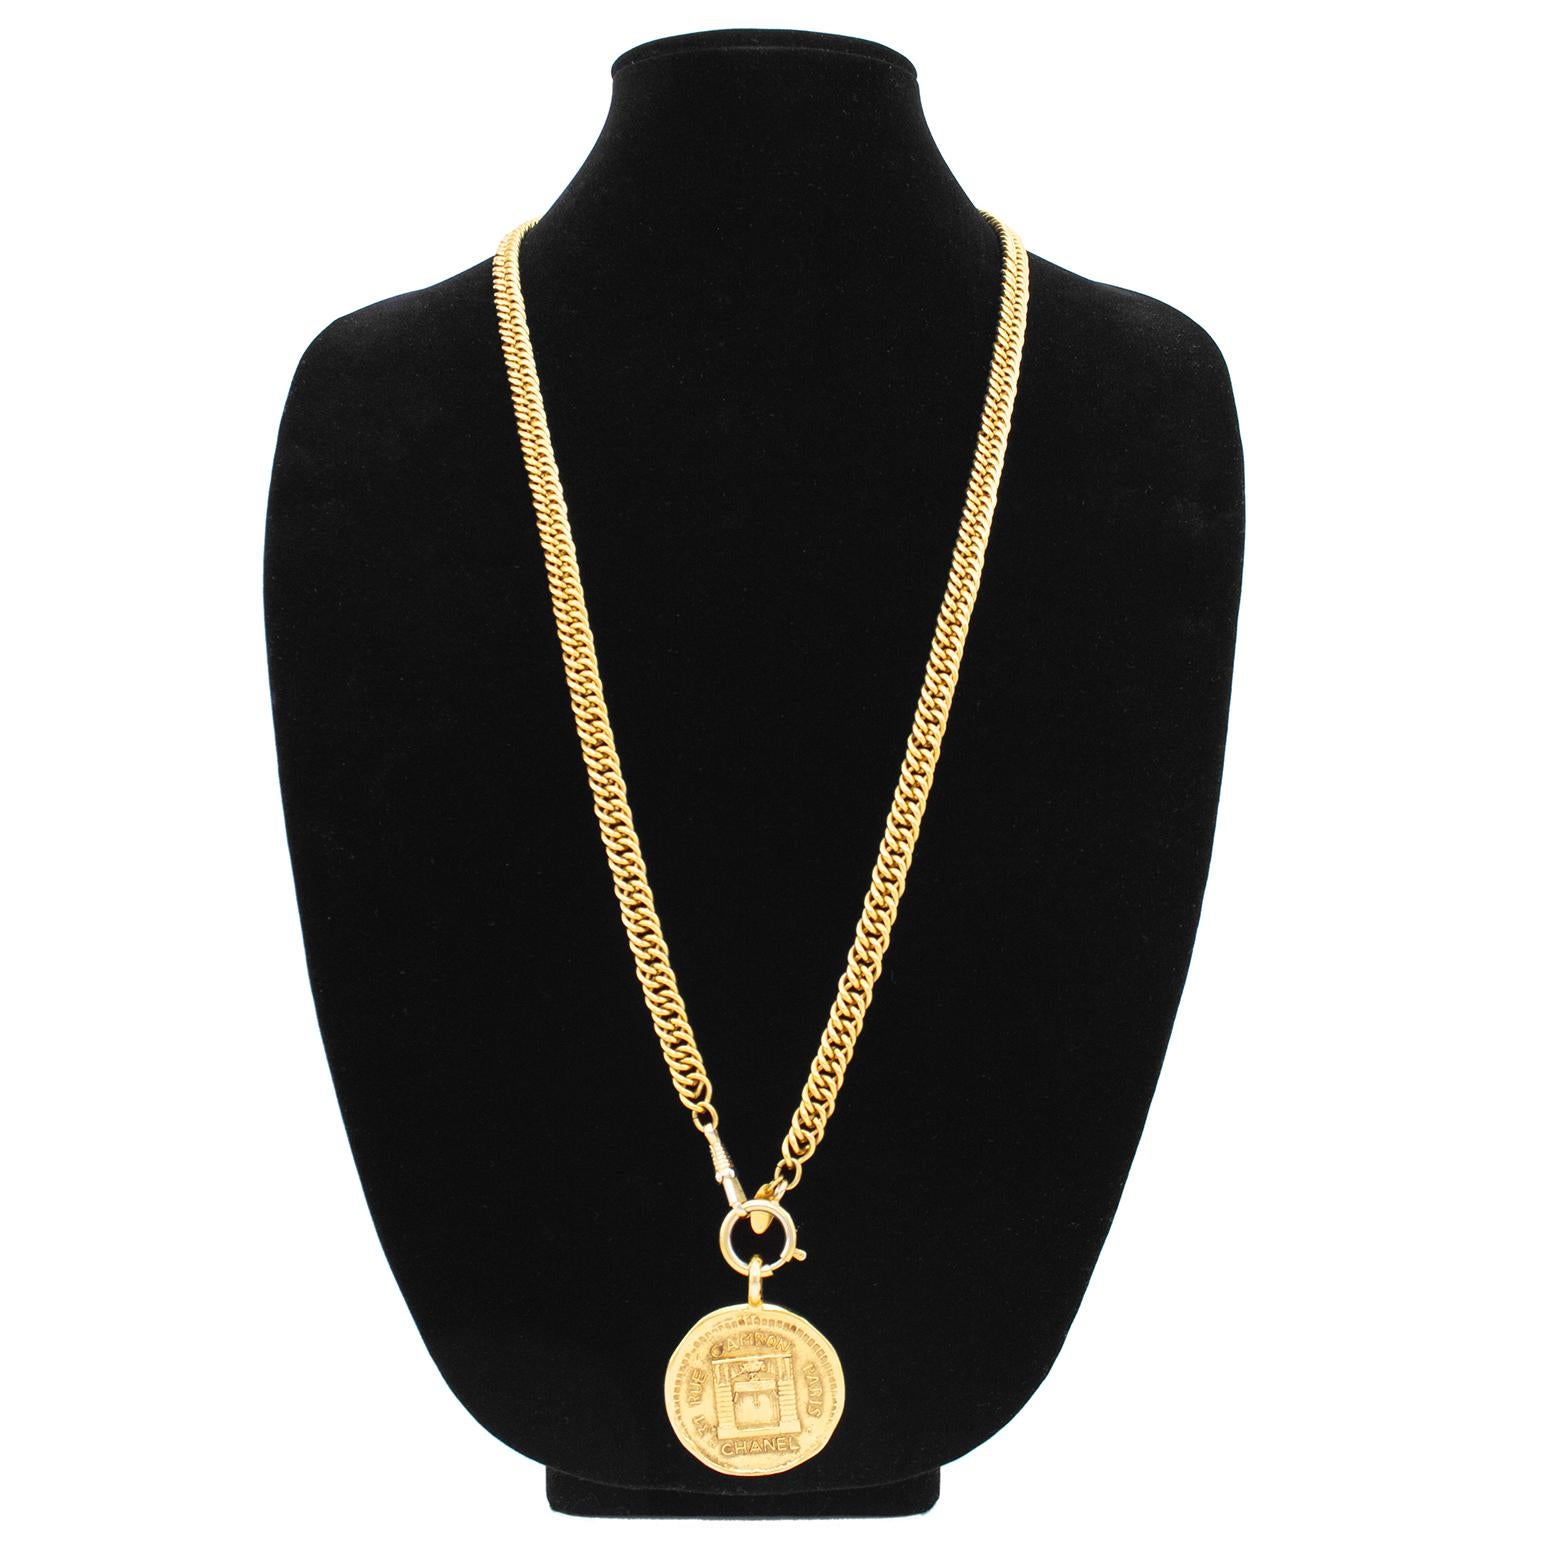 Collier Chanel des années 80 en métal doré avec un pendentif en forme de médaillon mesurant 1.5